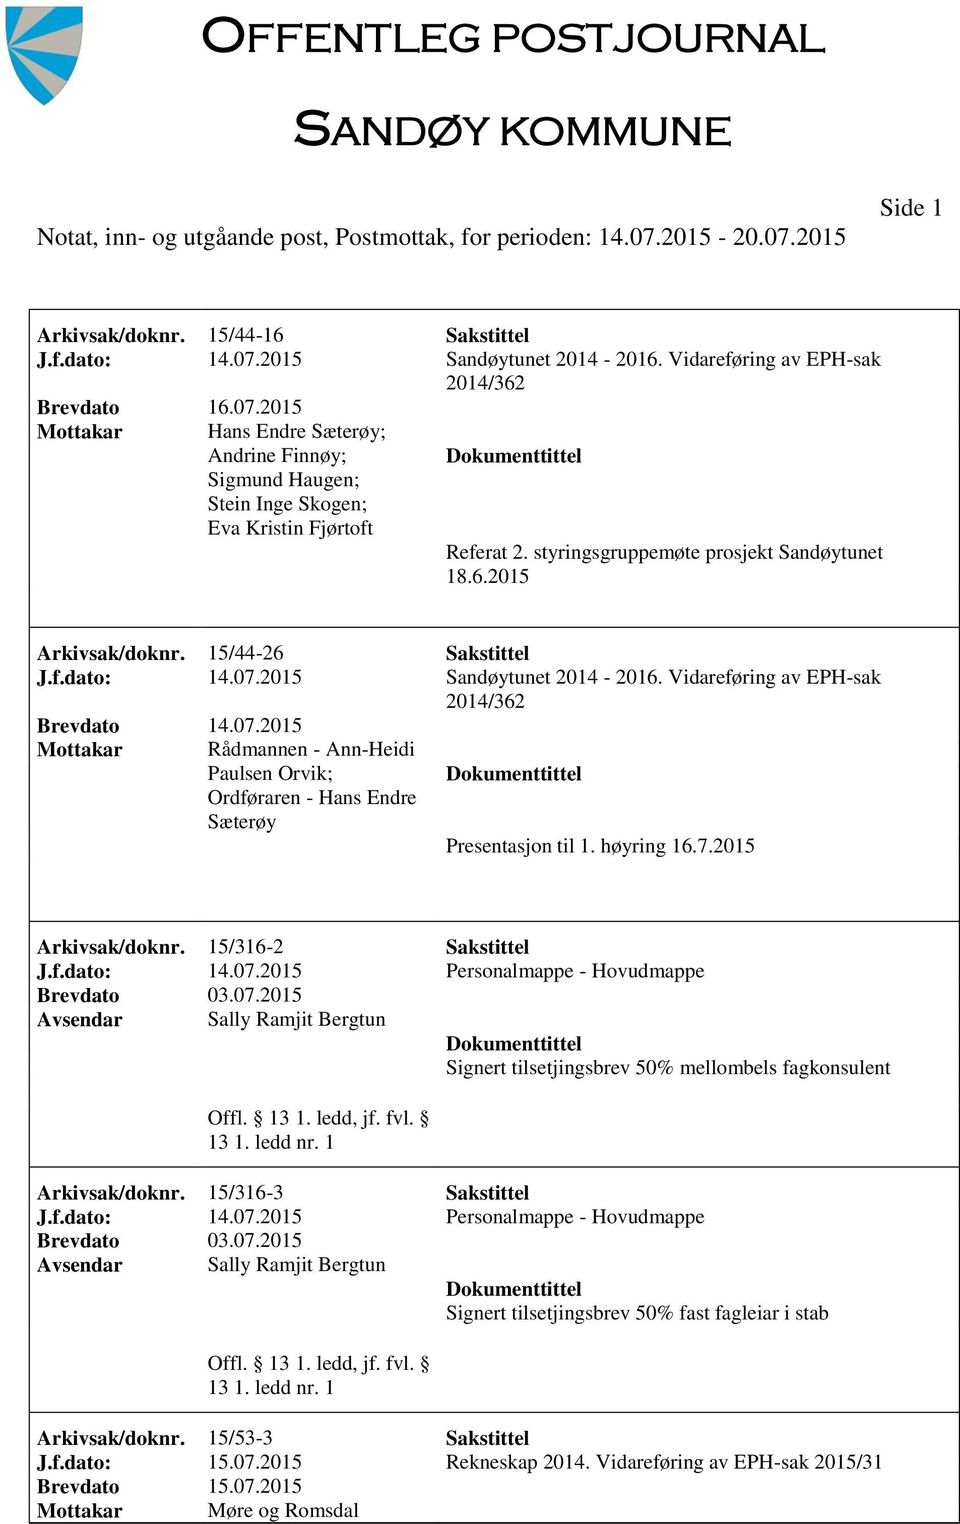 Vidareføring av EPH-sak 2014/362 Mottakar Rådmannen - Ann-Heidi Paulsen Orvik; Ordføraren - Hans Endre Sæterøy Presentasjon til 1. høyring 16.7.2015 Arkivsak/doknr. 15/316-2 Sakstittel J.f.dato: 14.